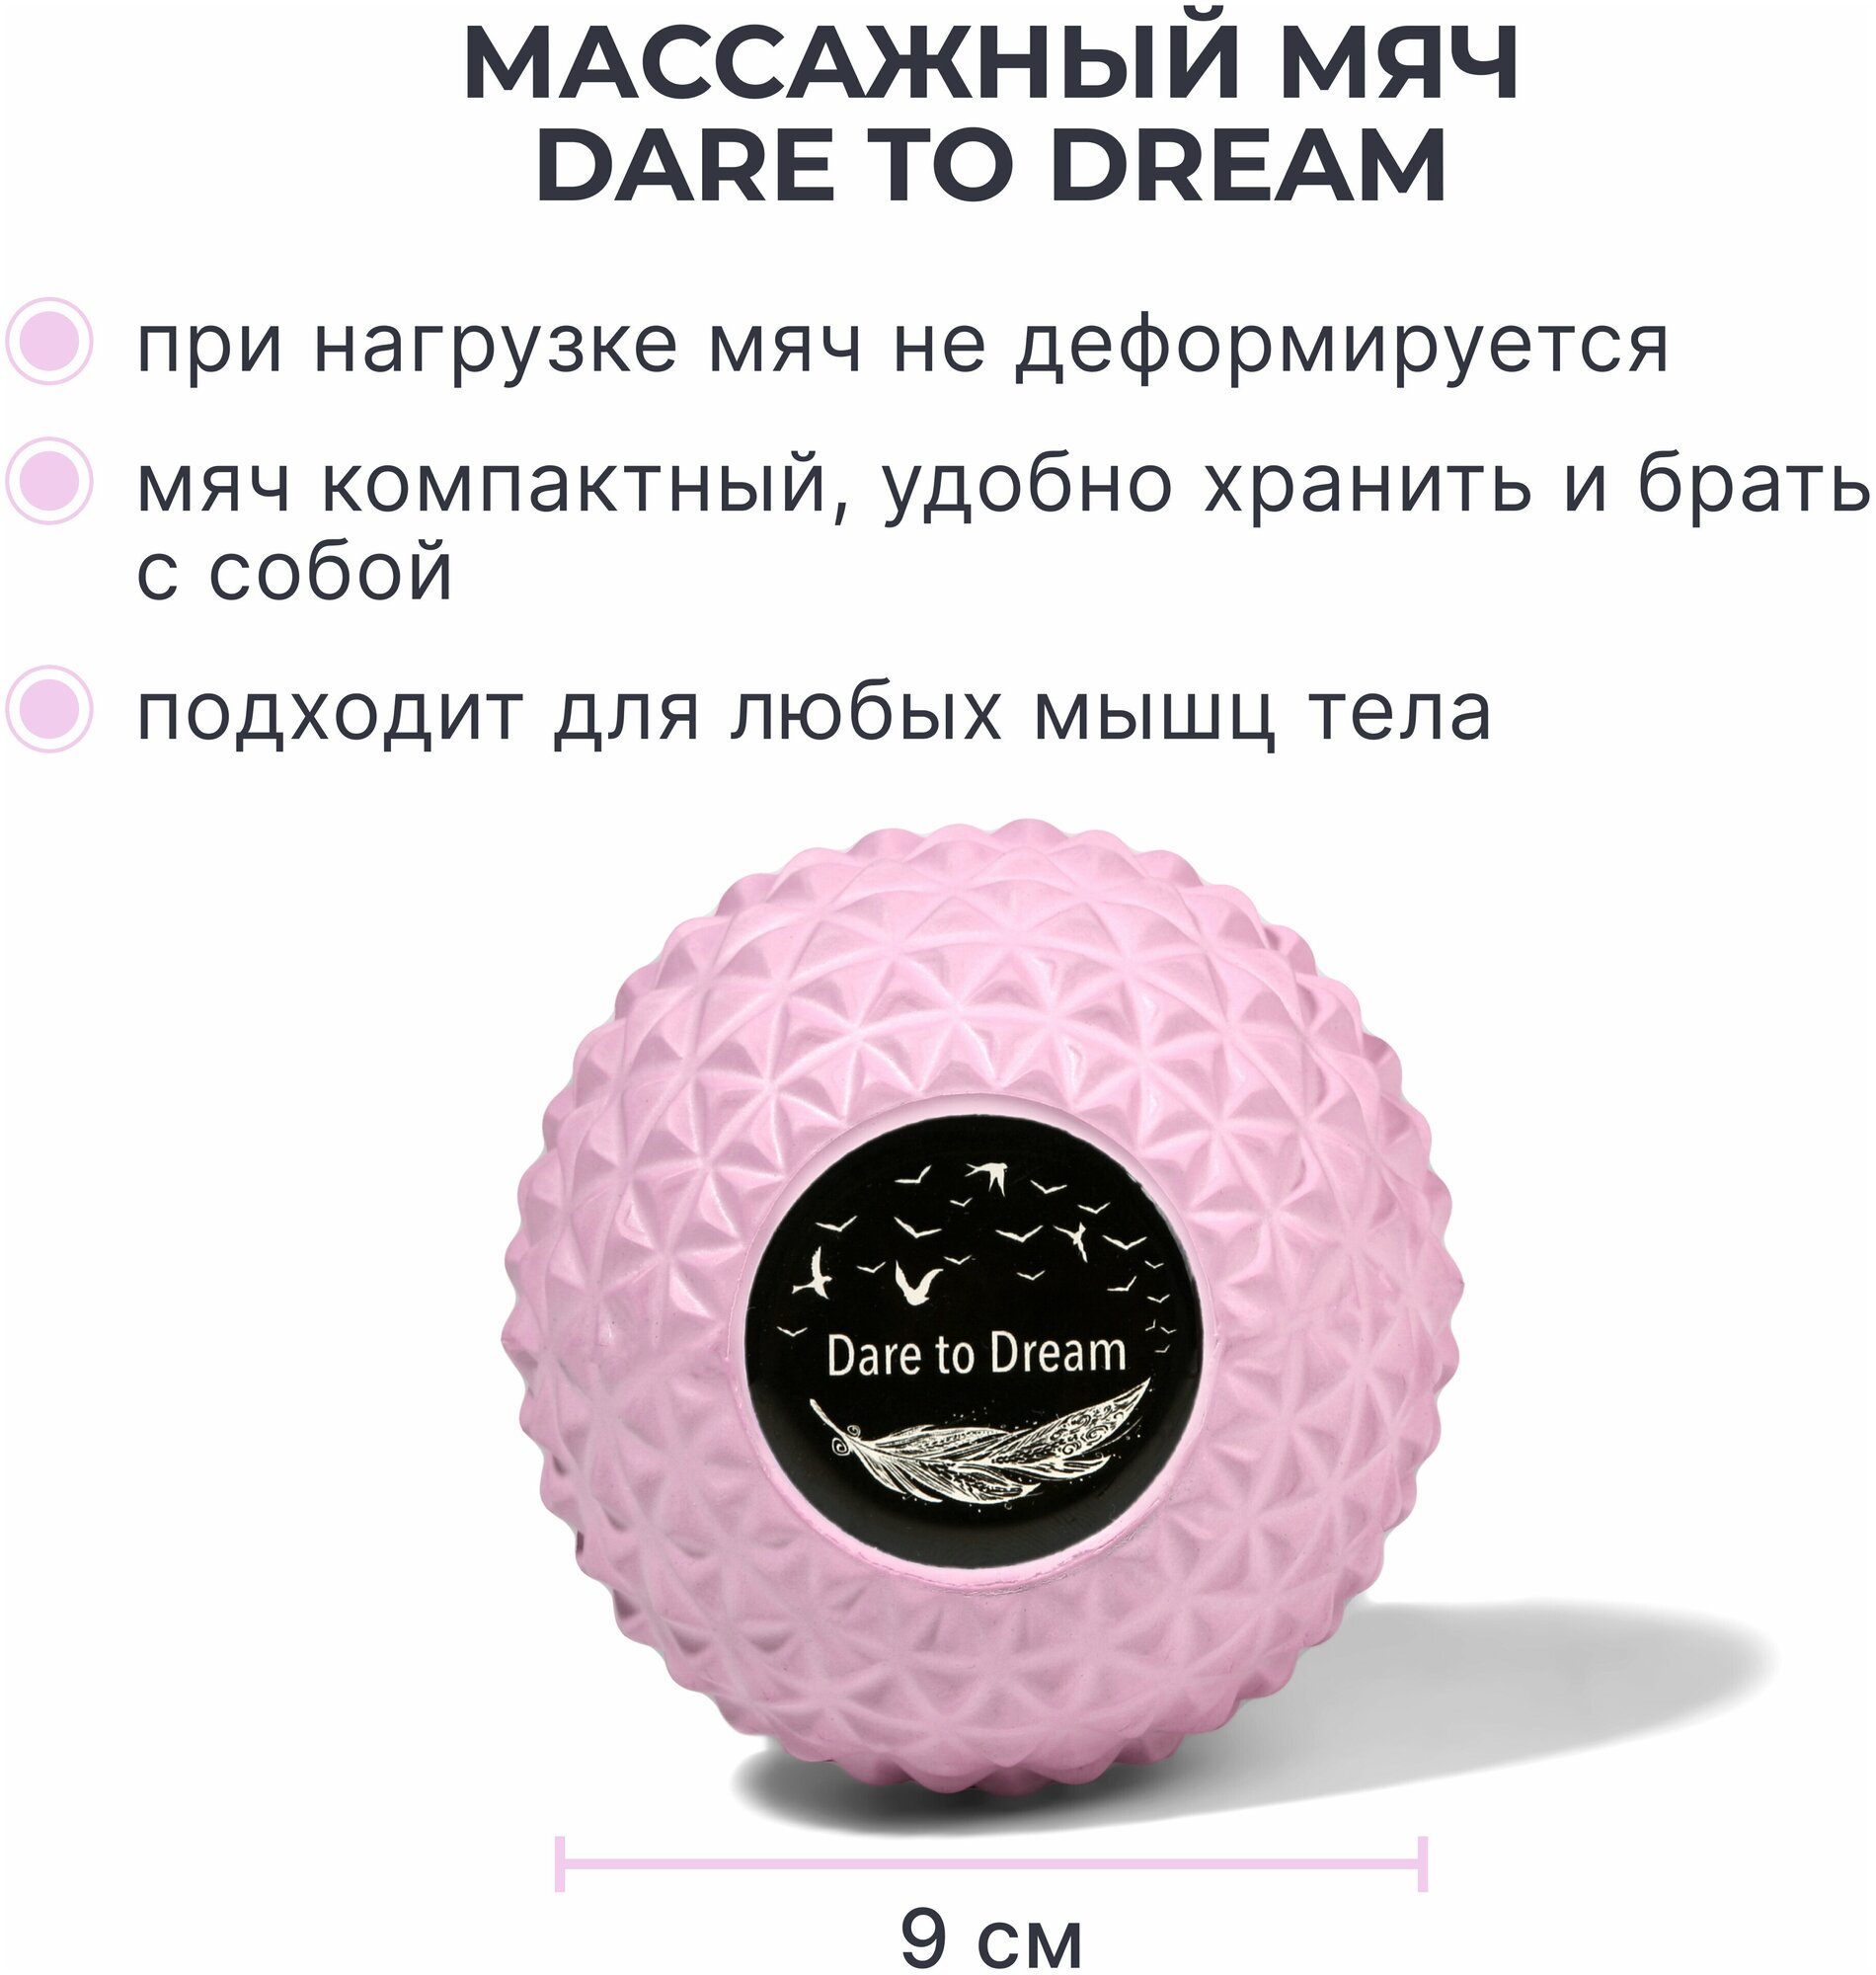 Мячик массажный для йоги, пилатеса и МФР, розовый, валик для спины, мяч для МФР, ролик массажный